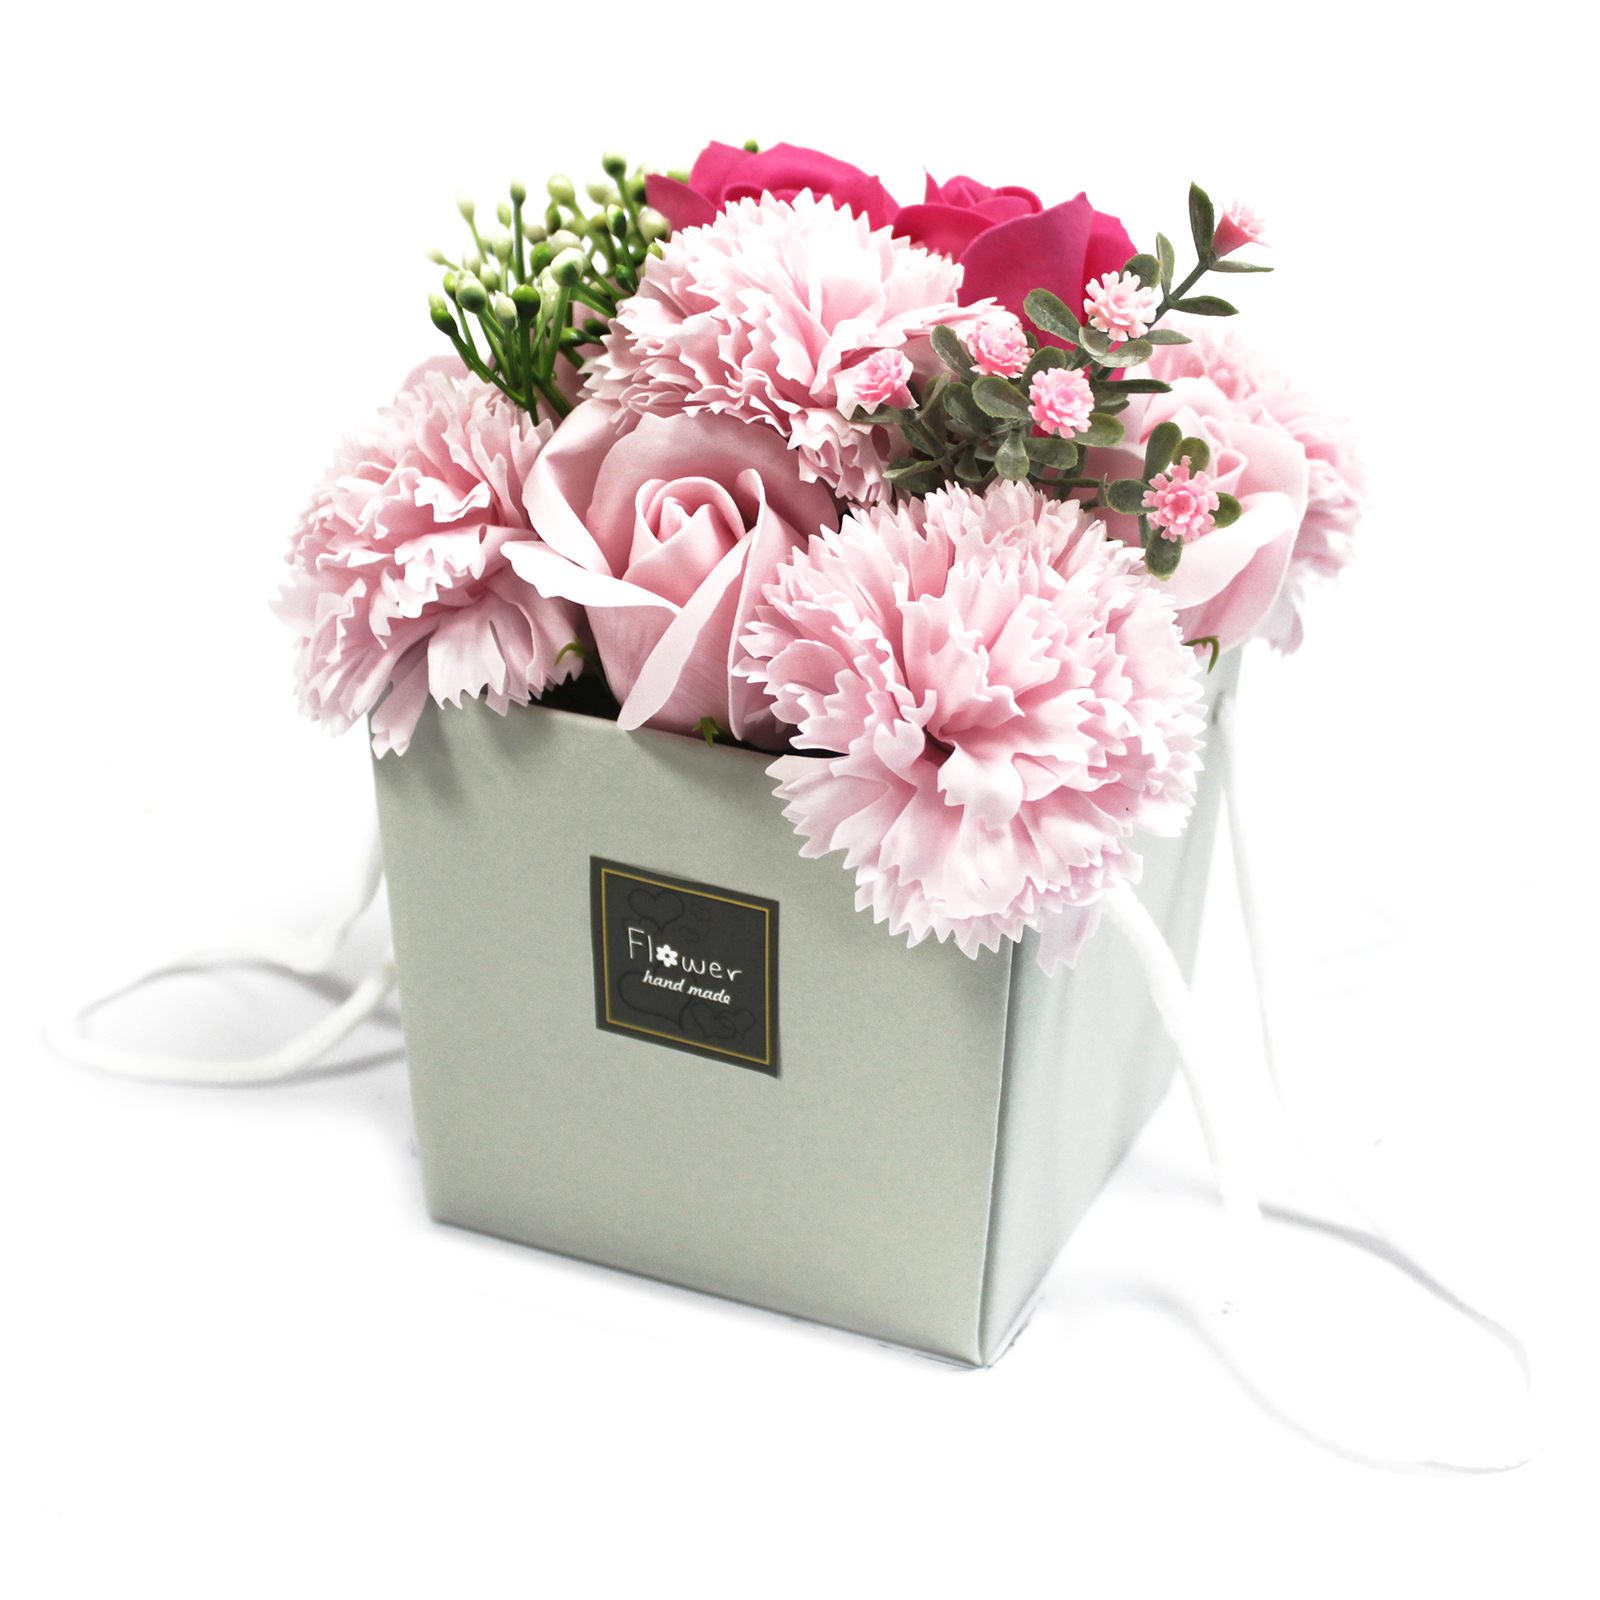 1x Soap Flower Bouqet - Pink Rose & Carnation